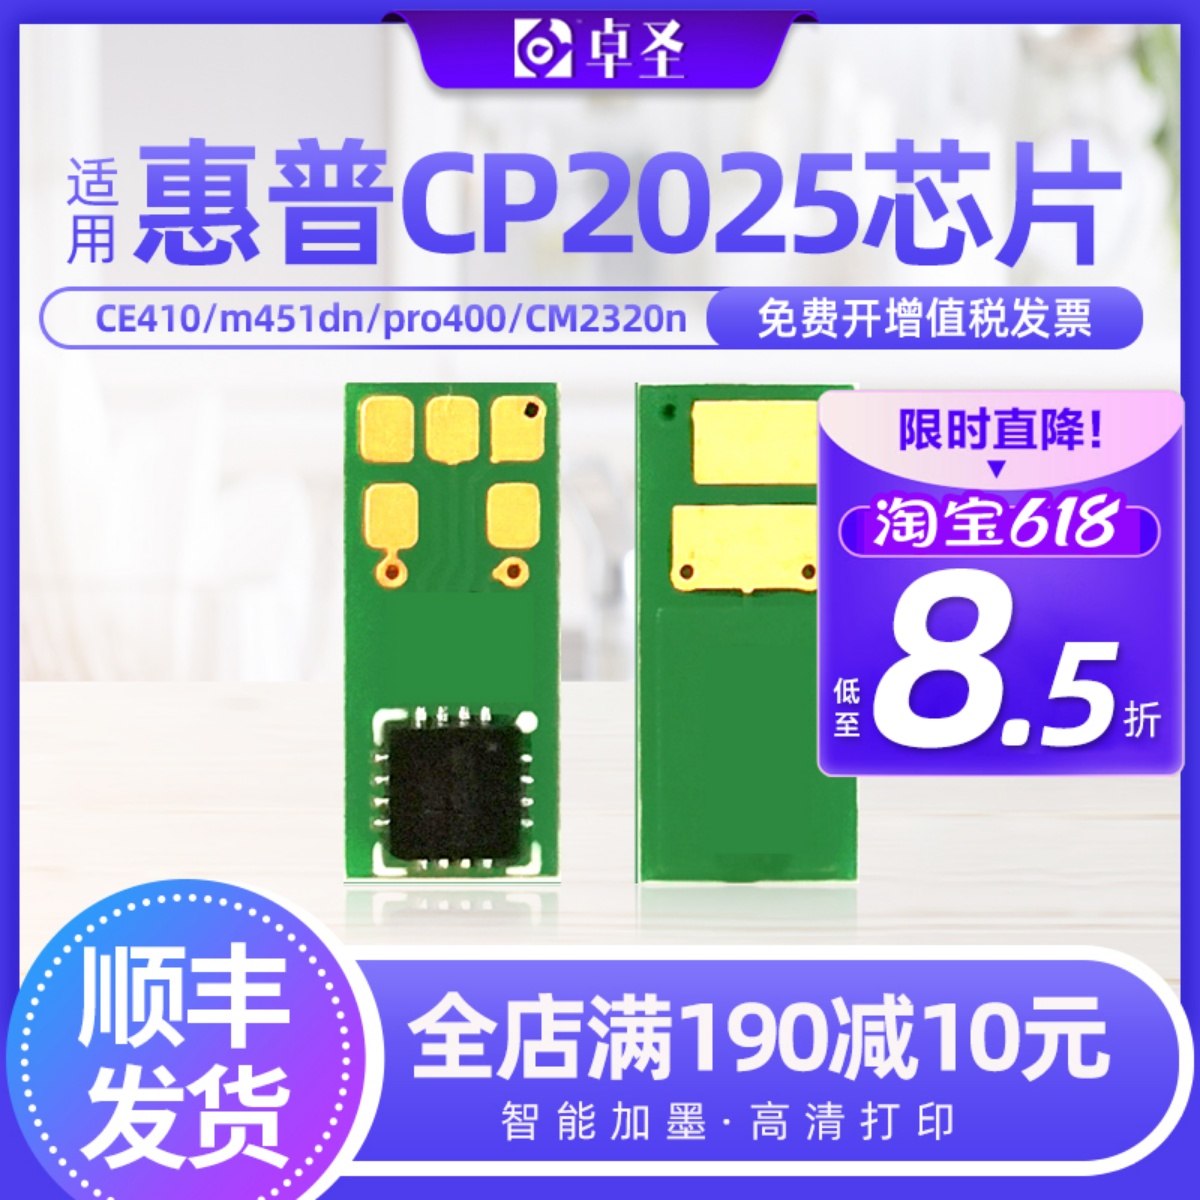 惠普CP2025硒鼓芯片m451dnCE410